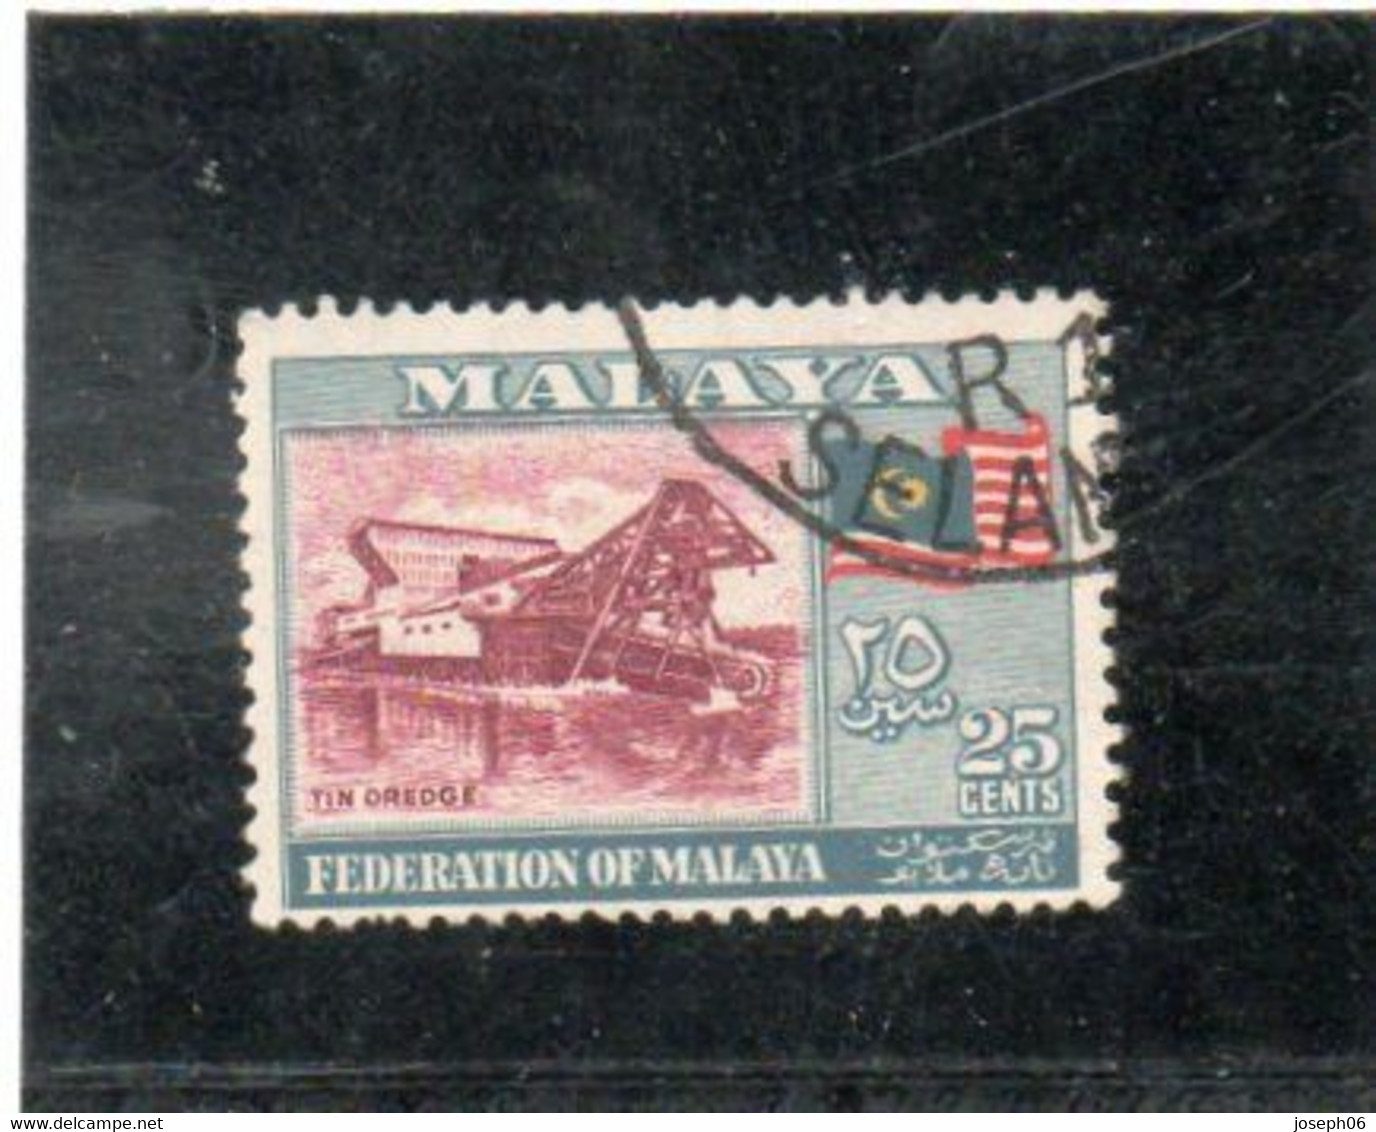 MALAISIE   Malaya   1957-61  Y.T. N° 80 à 83  Incomplet  Oblitéré - Federation Of Malaya